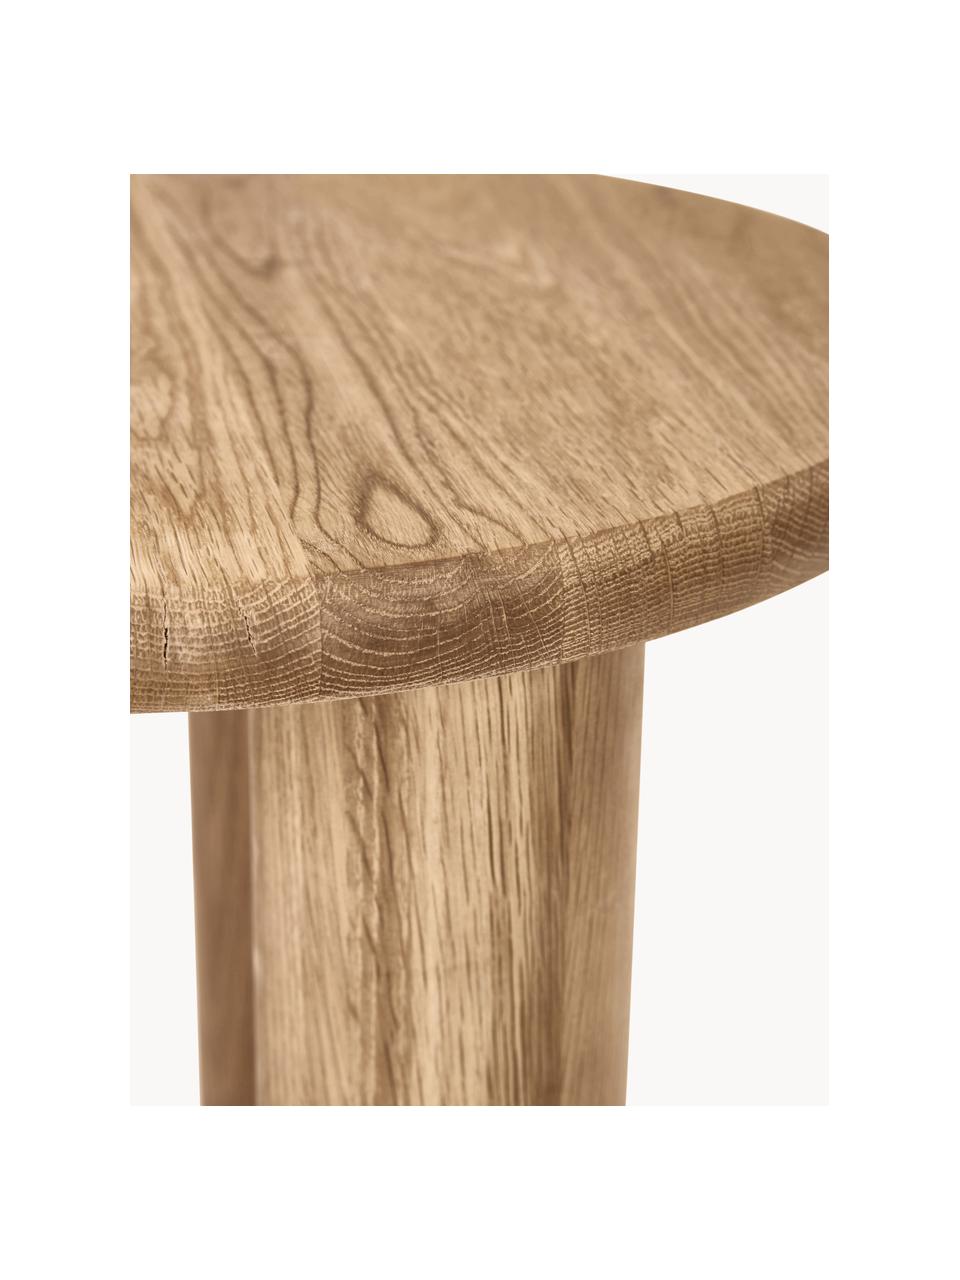 Tavolino rotondo in legno di quercia Didi, Legno massiccio di quercia oliato

Questo prodotto è realizzato con legno di provenienza sostenibile e certificato FSC®, Legno di quercia, Ø 40 x Alt. 45 cm